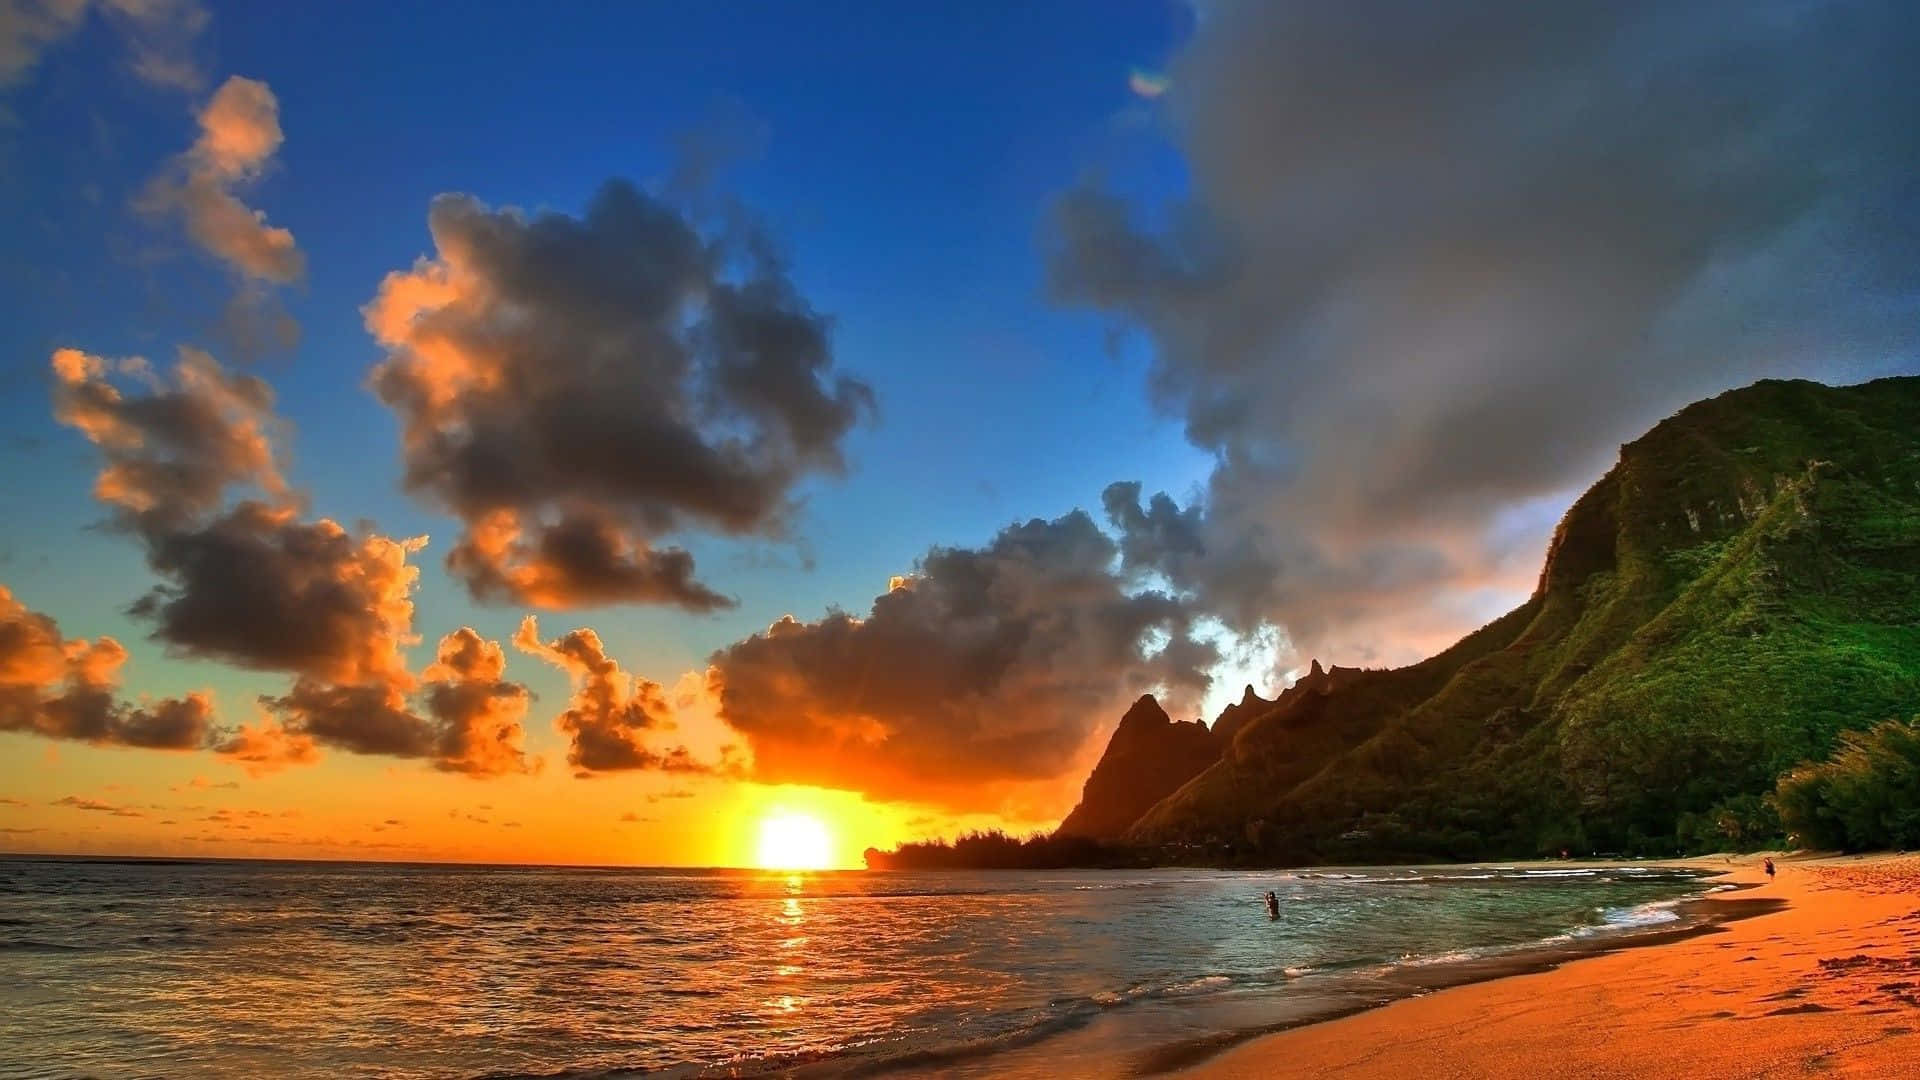 Disfrutala Belleza De Una Tranquila Puesta De Sol En La Playa En Tu Computadora O Móvil. Fondo de pantalla